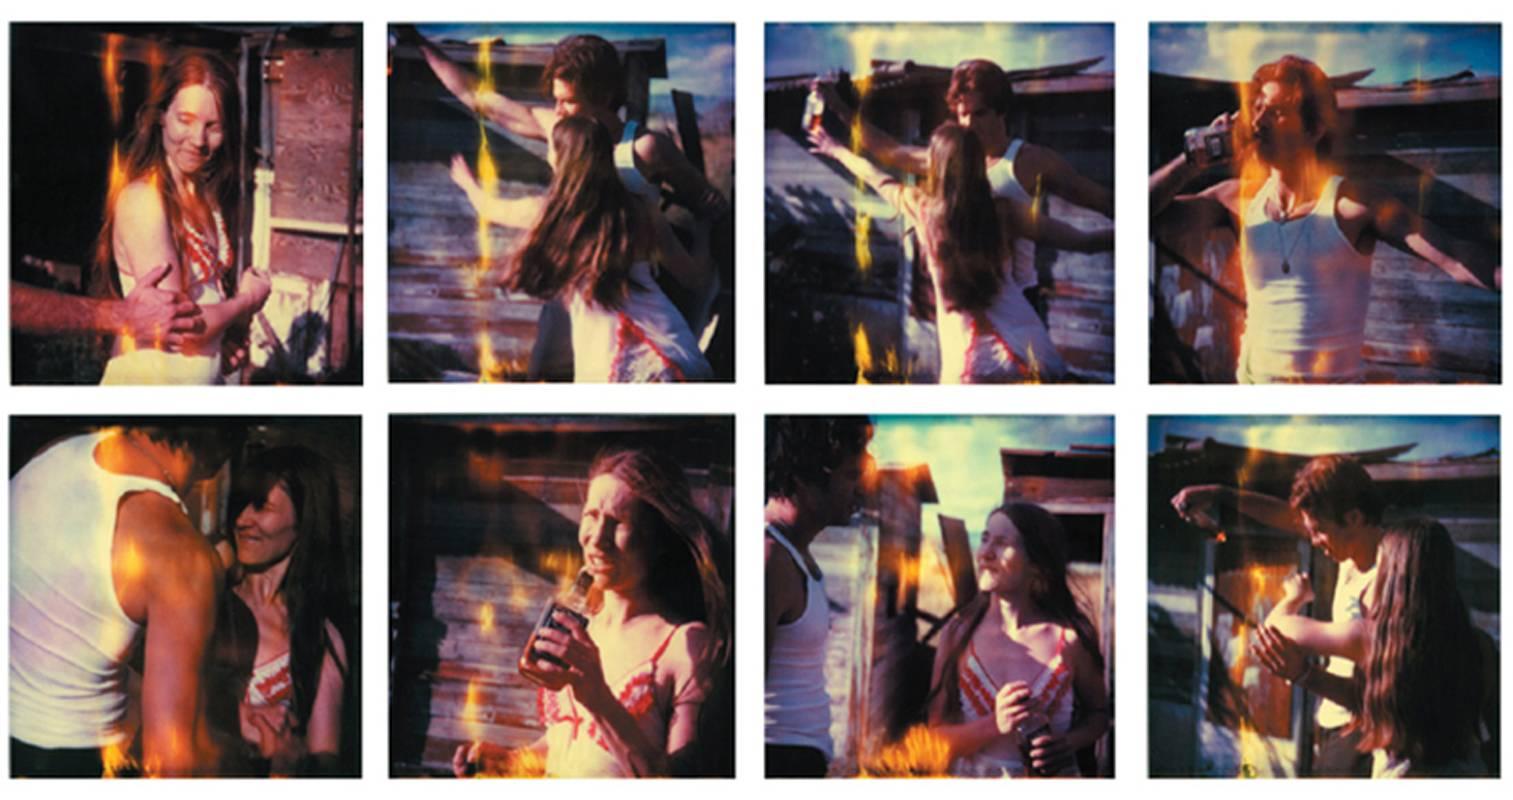 Stefanie Schneider Portrait Photograph - Whisky Dance I - Sidewinder - 8 pieces, analog, 82x80cm each, mounted